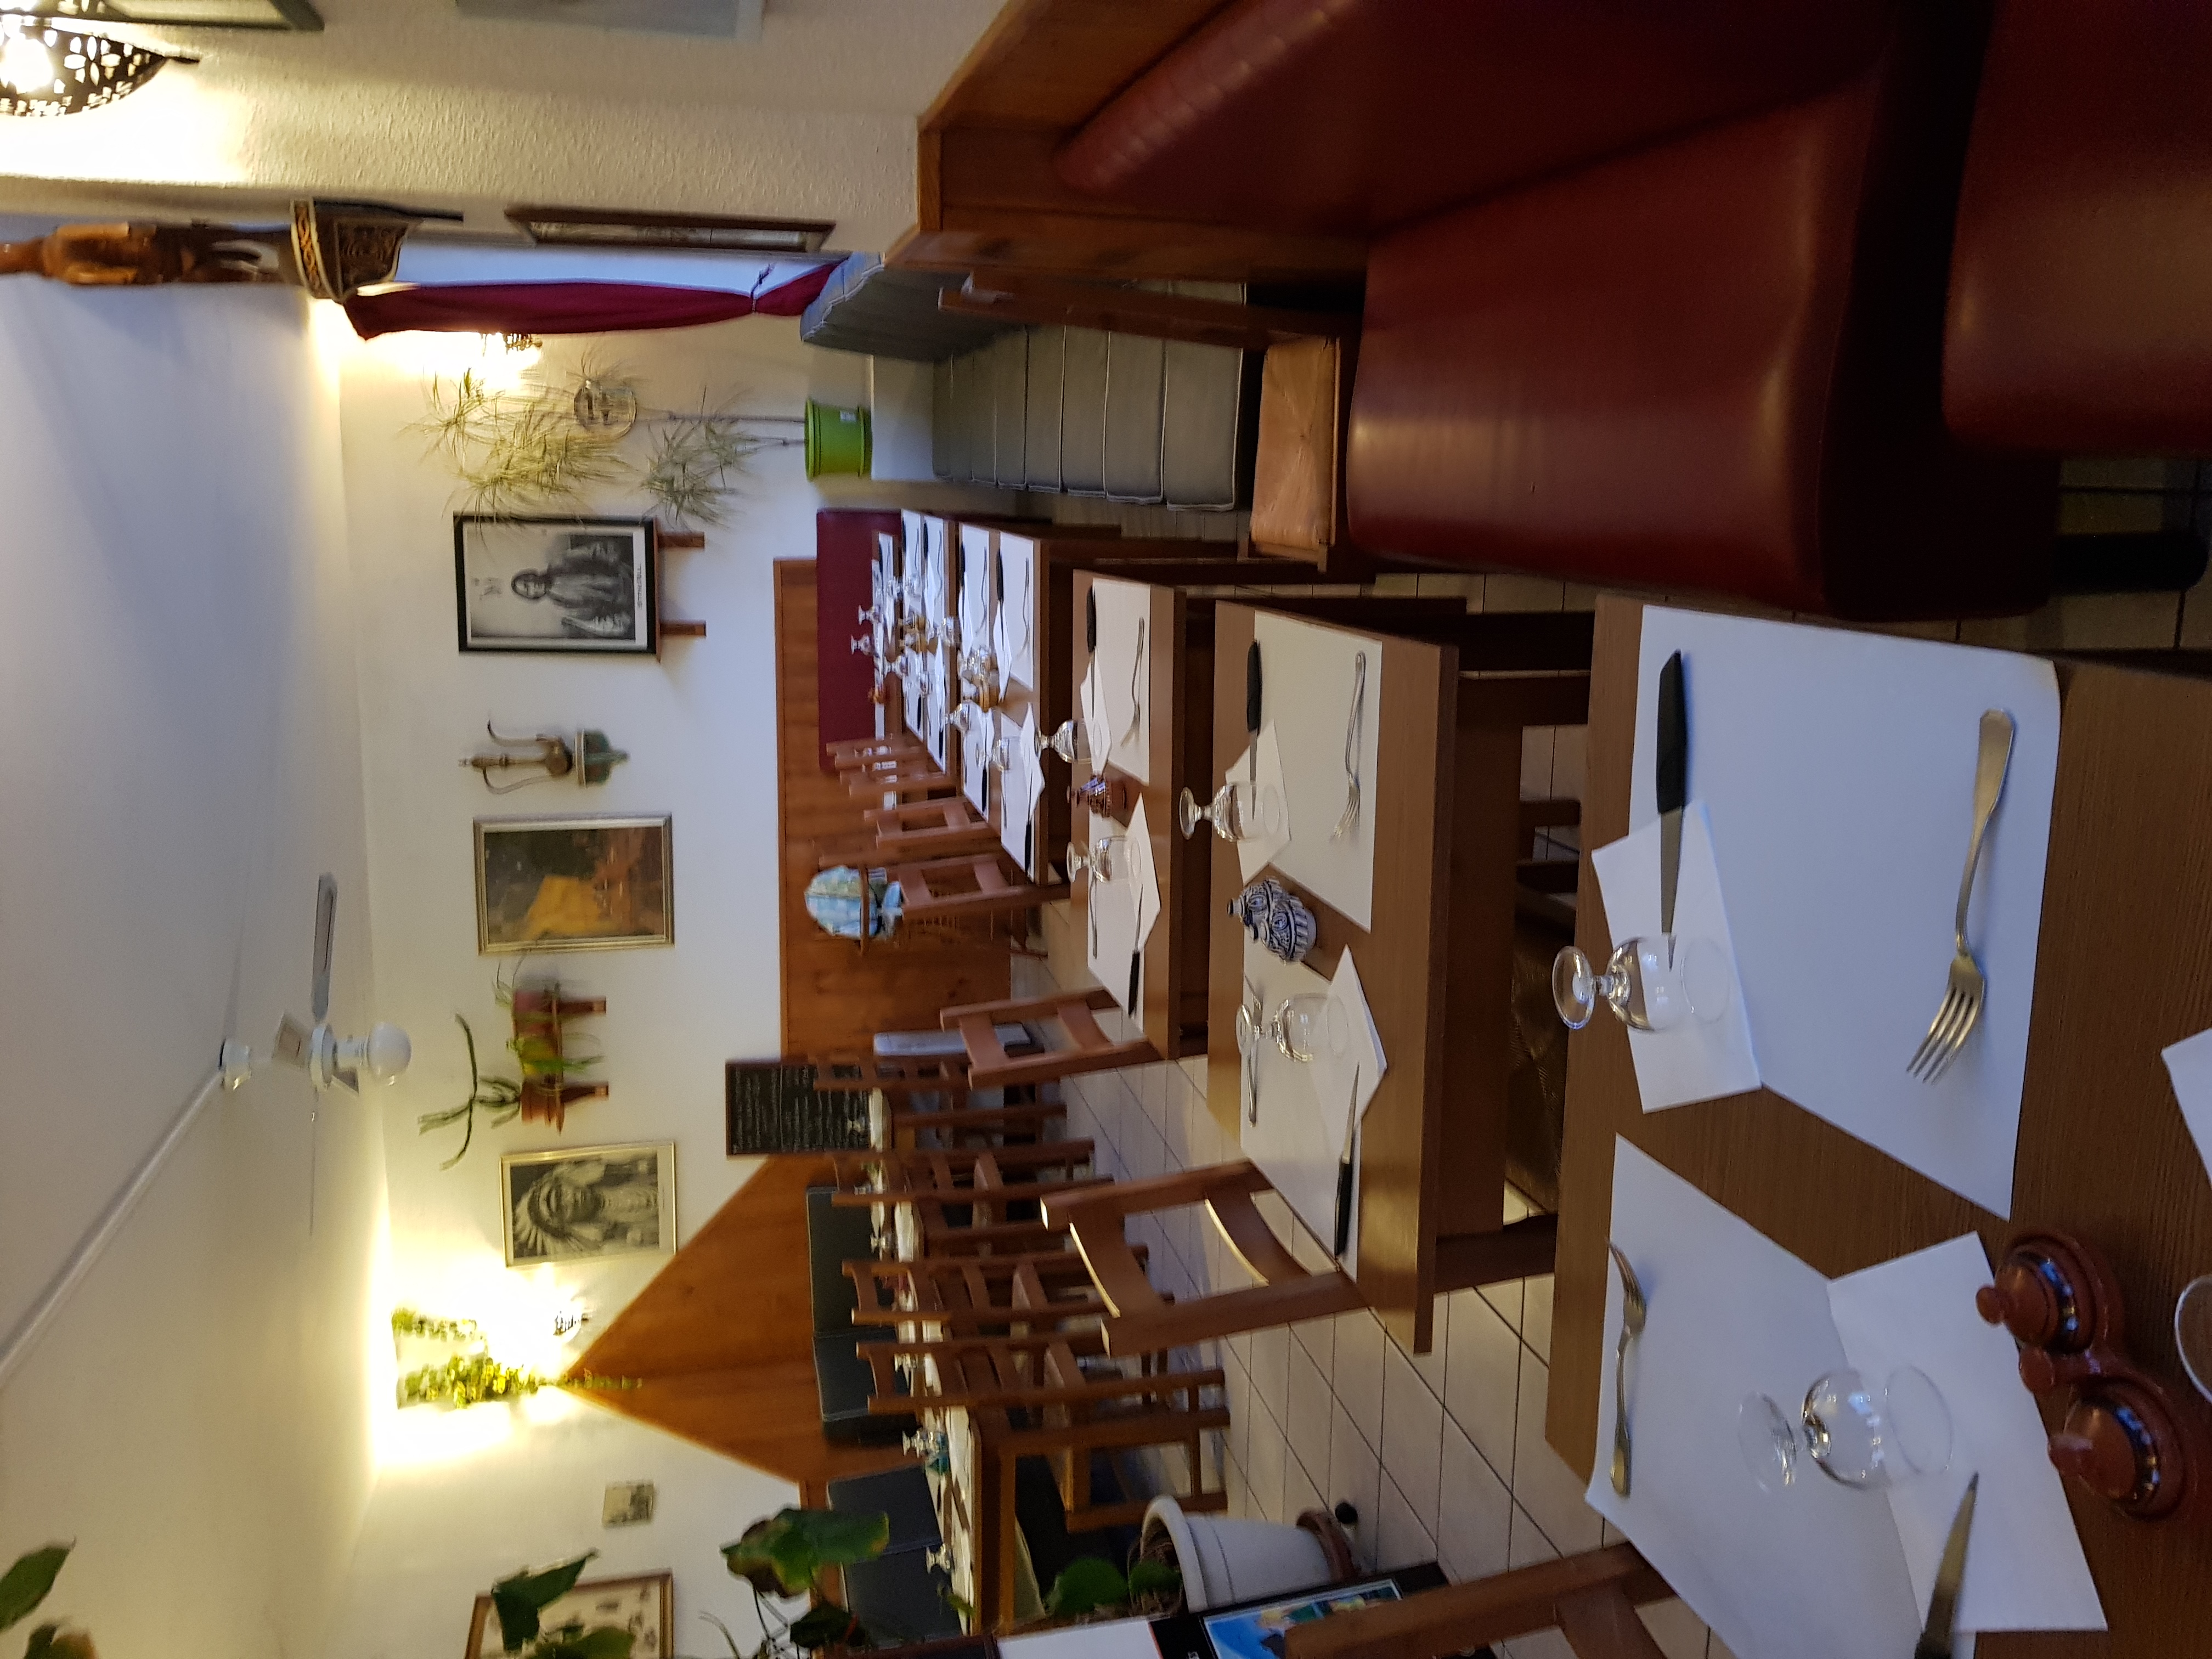 Cession pour départ à la retraite d'une Pizzeria/Brasserie située à Alvignac” joli village touristique de Cauvaldor au Nord du Lot (46). à proximité d’un Casino dans une  commune  entourée de sites touristiques d’envergure comme Padirac et Rocamadour.

l'activité est soutenue  grâce à une clientèle fidèle et des touristes nombreux aux beaux jours. L'établissement est parfaitement situé dans le centre du village. 
Au RDC, un restaurant très bien équipé avec une salle à manger de  40 places assises, et une terrasse de 30 places assises, sanitaire et diverses dépendances pour le stockage, un petit jardin 100m2 environ  est également situé à l'arrière de l'immeuble.

à l’étage 2 logements de 40m2 chacun  en très bon état, double vitrage, chauffage électrique, trois  compteurs électriques  et d’eau privés et commerce séparés.

En activité par les gérants actuels depuis 18 ans,  cette affaire est idéale pour se lancer à son compte souhaitant s'épanouir dans un magnifique village, offrant un cadre de vie agréable et plein de charme avec un potentiel de développement certain.

Prix de vente: 140000€ pour les murs 
65000€ pour le FDC à négocier 

Ne manquez pas cette occasion unique de prendre en main cet établissement à potentiel de développement prometteur.

DPE récemment réalisé.

Chiffre d'affaires (HT) : 136644€
L'excédent Brut d’exploitation (EBE) : 15192 €